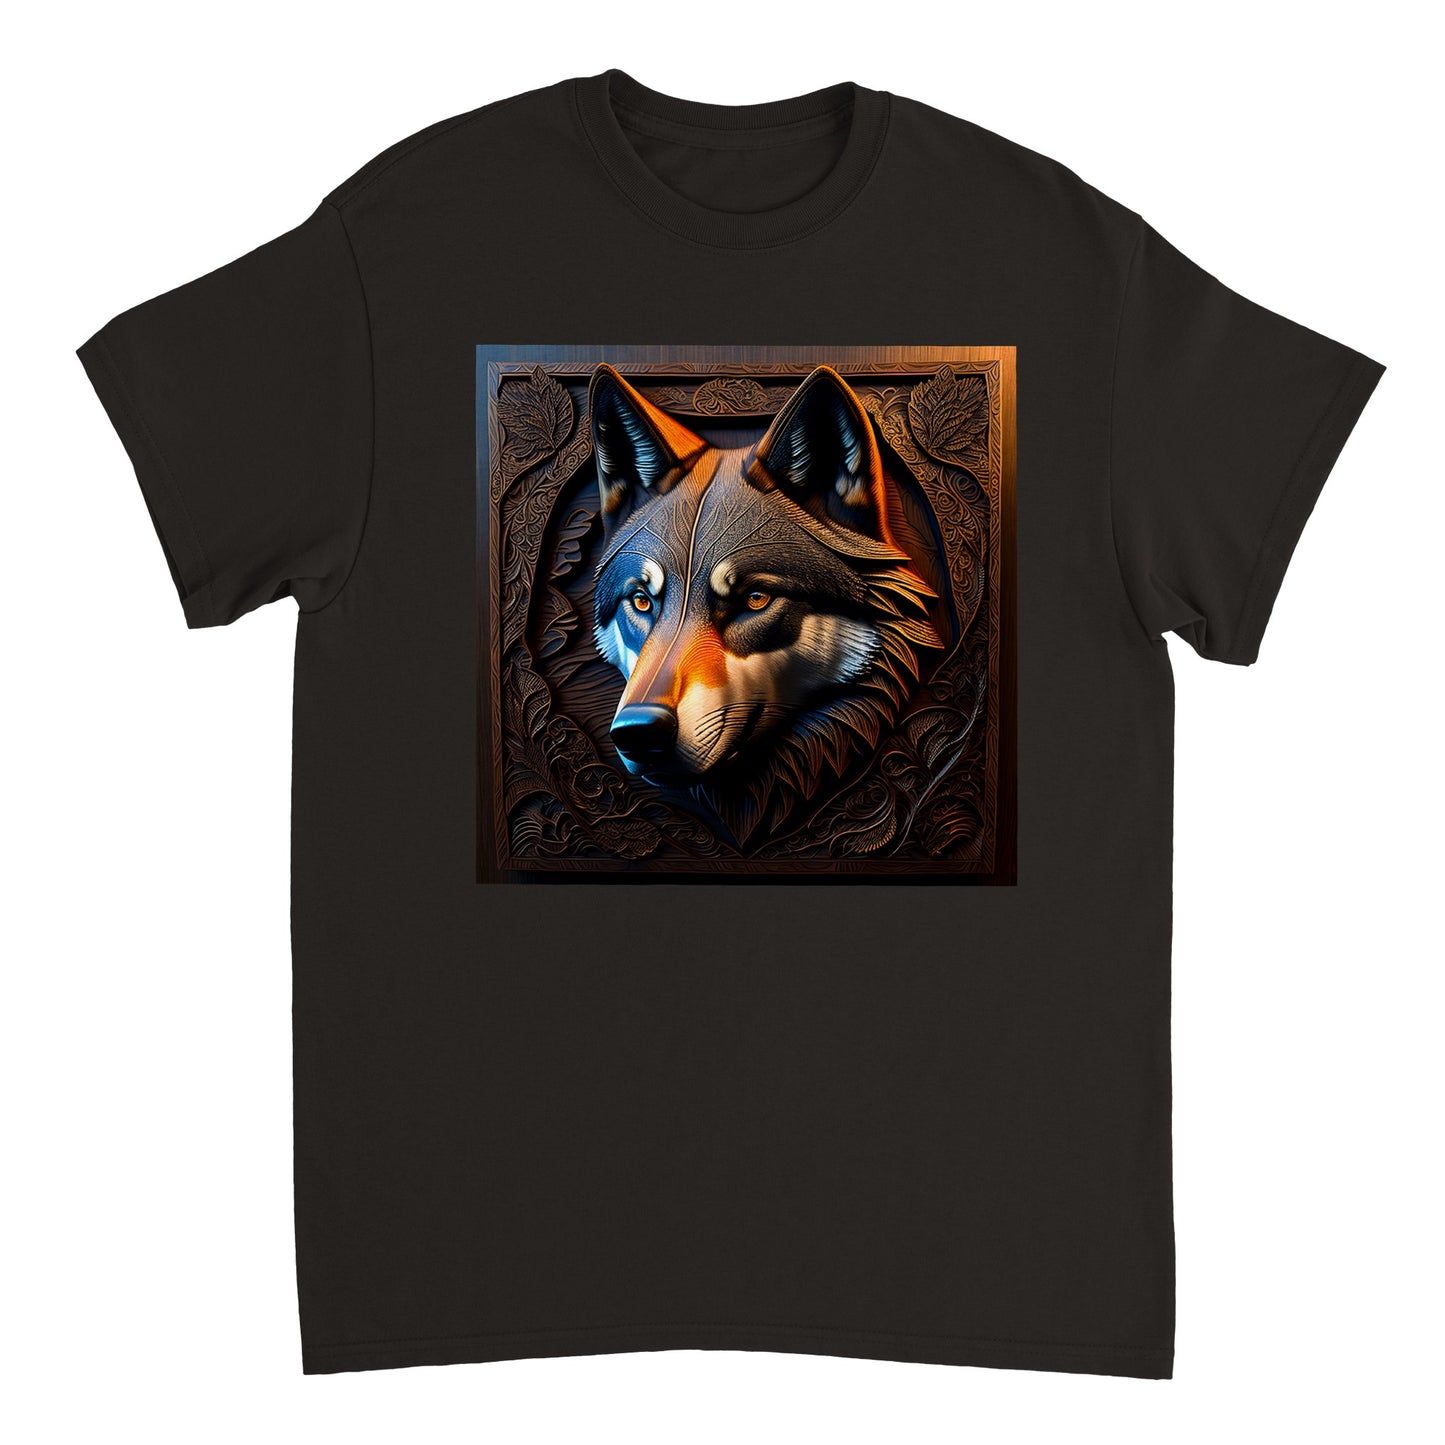 3D Wooden Animal Art - Heavyweight Unisex Crewneck T-shirt 44